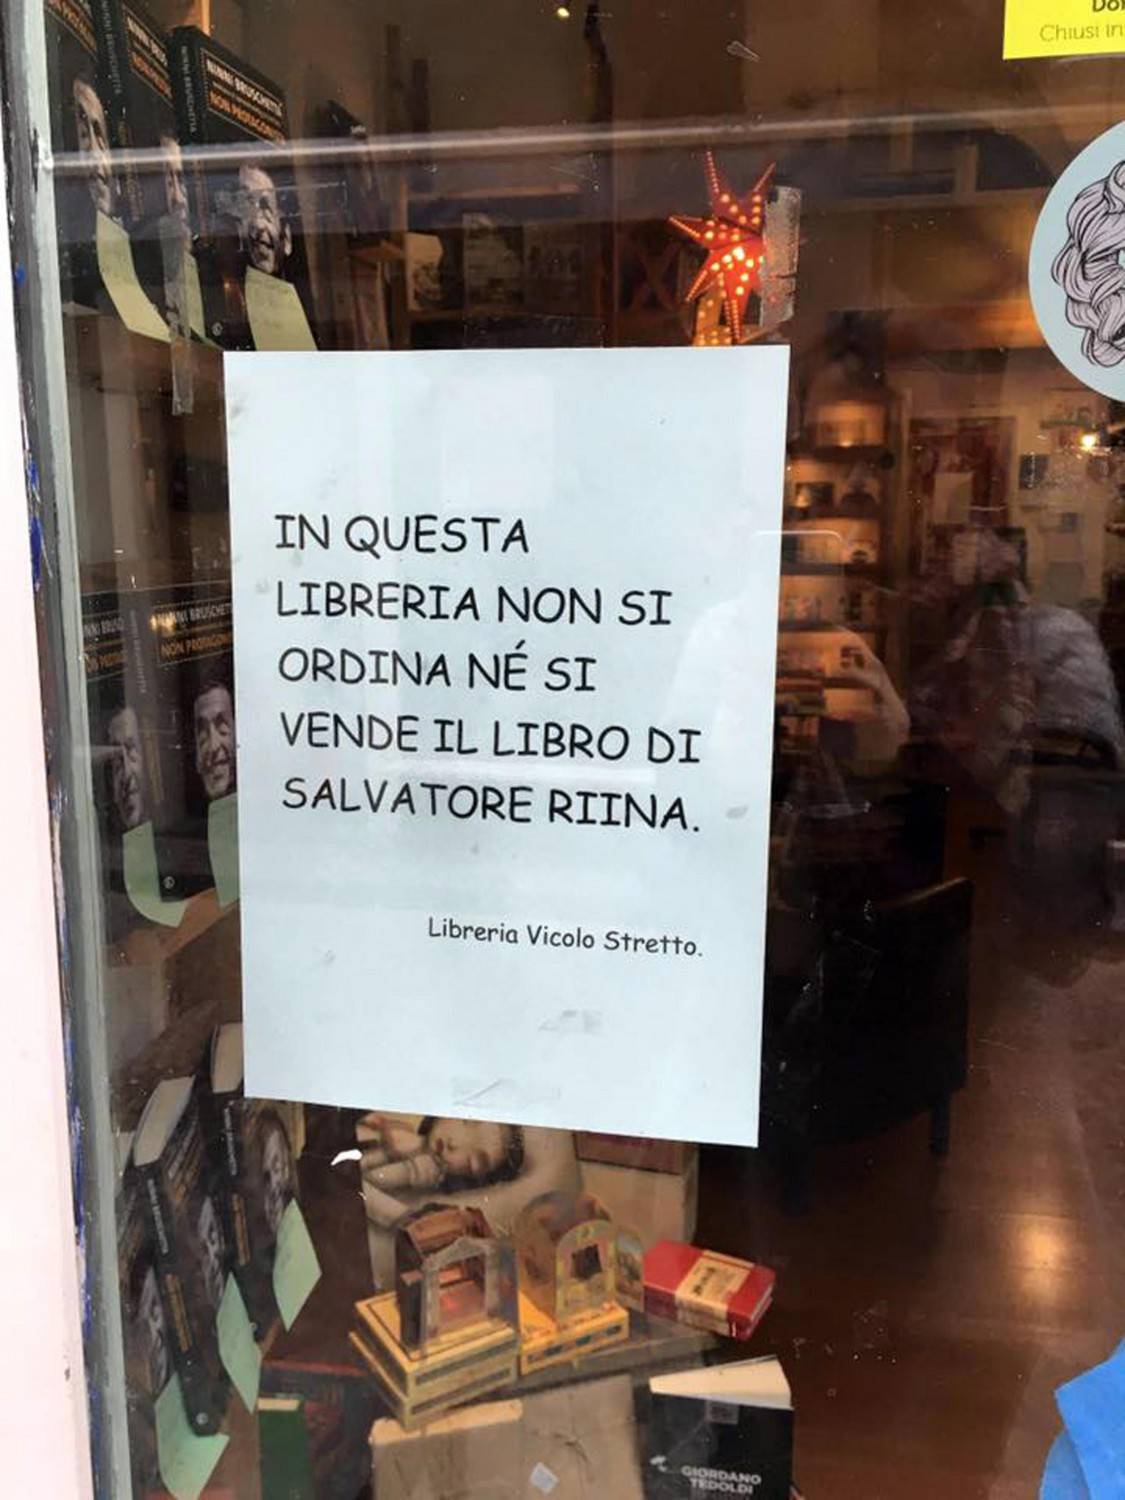 La vetrata di una libreria del centro storico di Catania